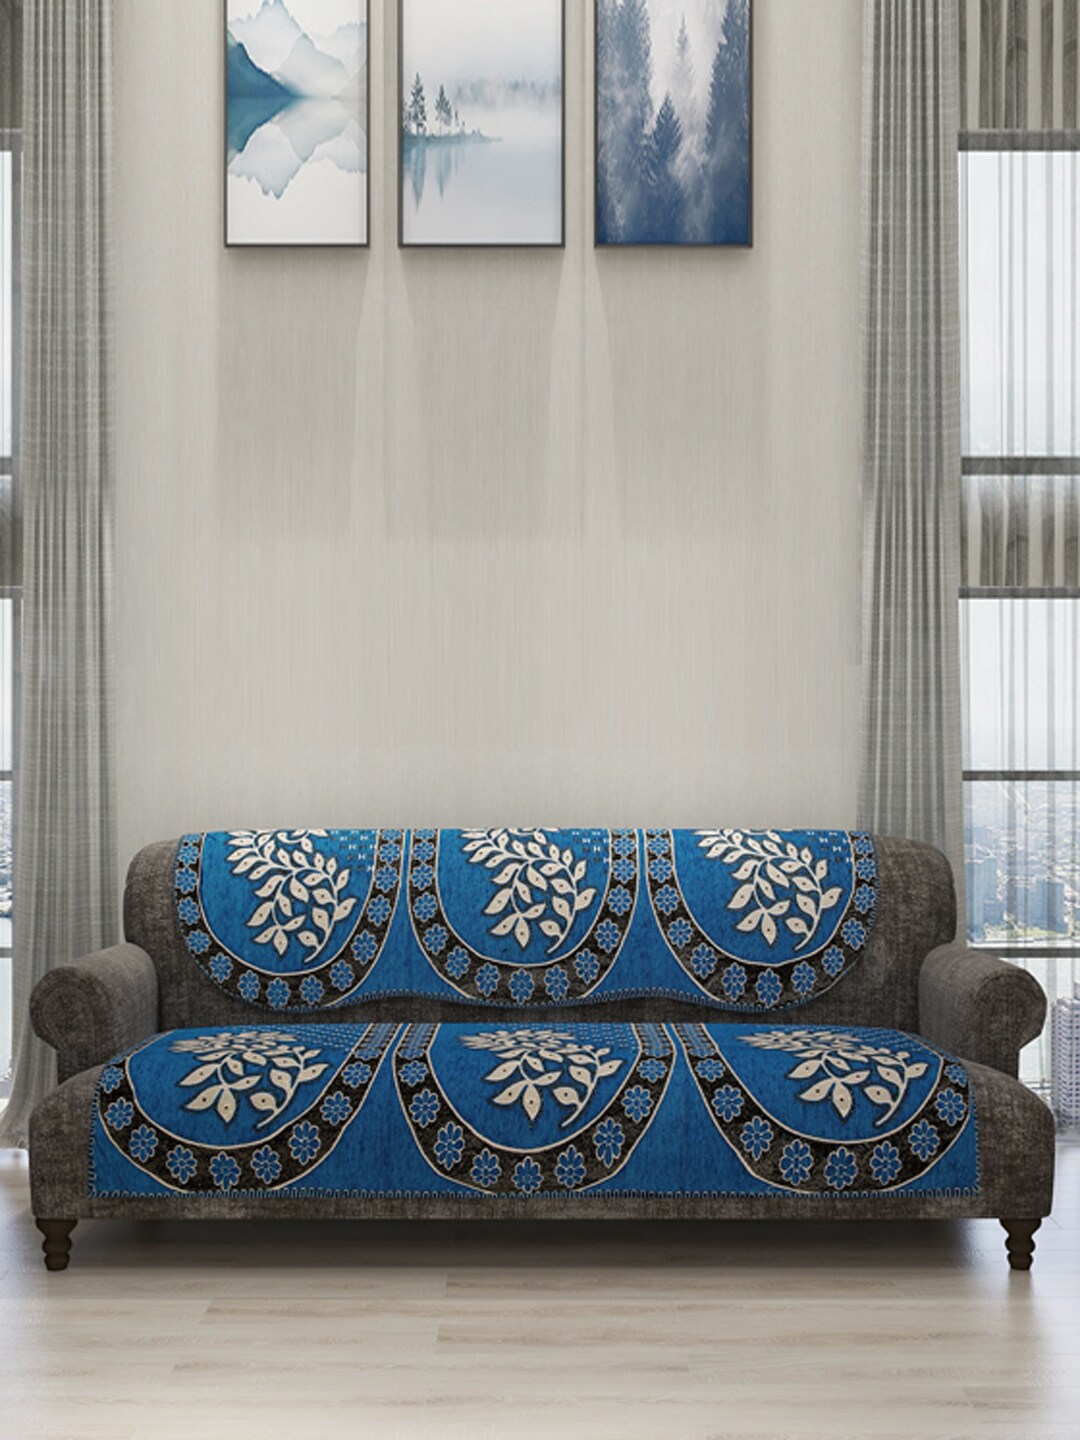 ROMEE Set Of 6 Blue Self-Design Sofa Cover Price in India